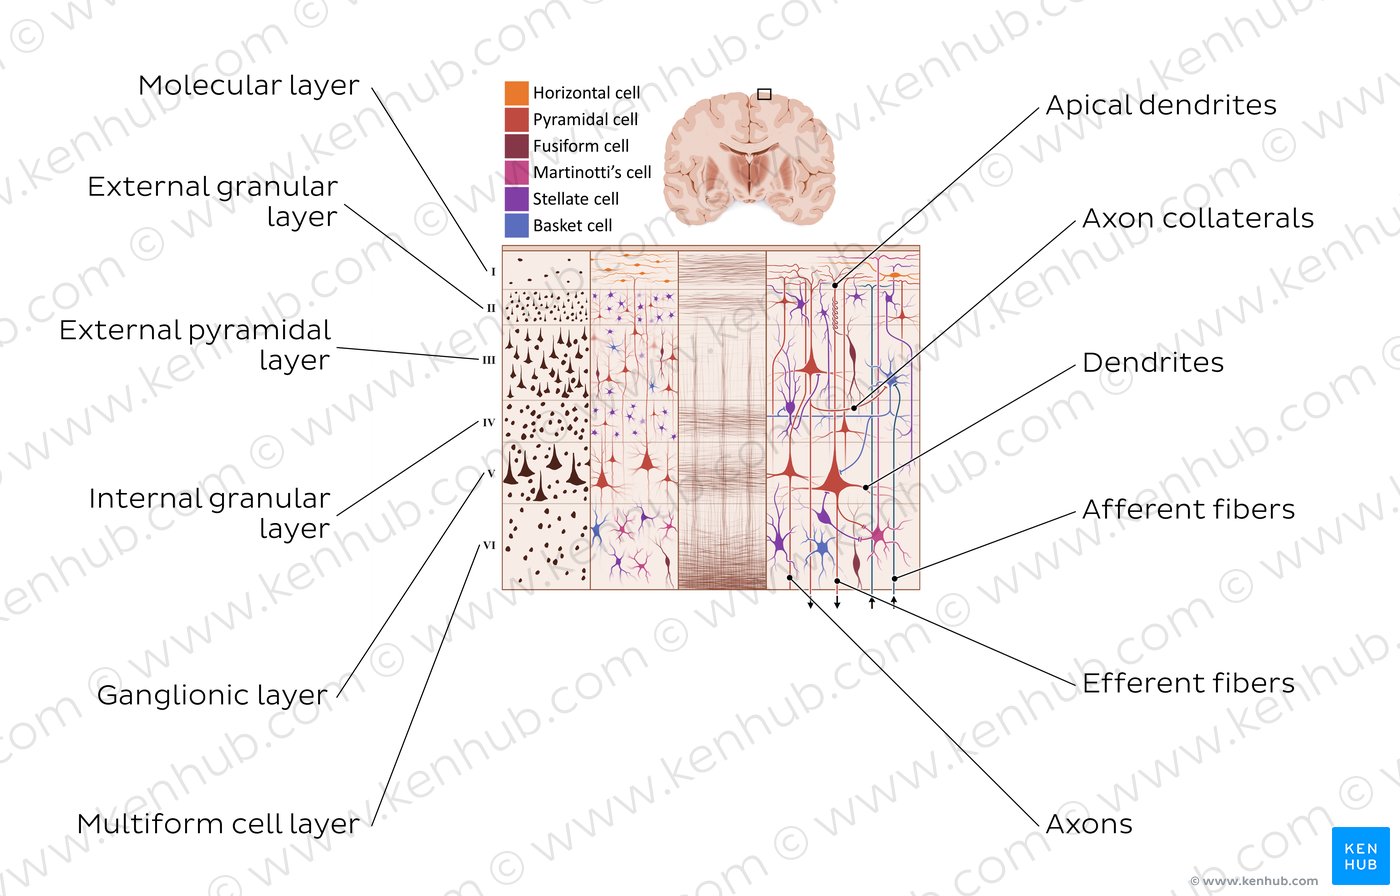 Cerebral cortex I: Overview